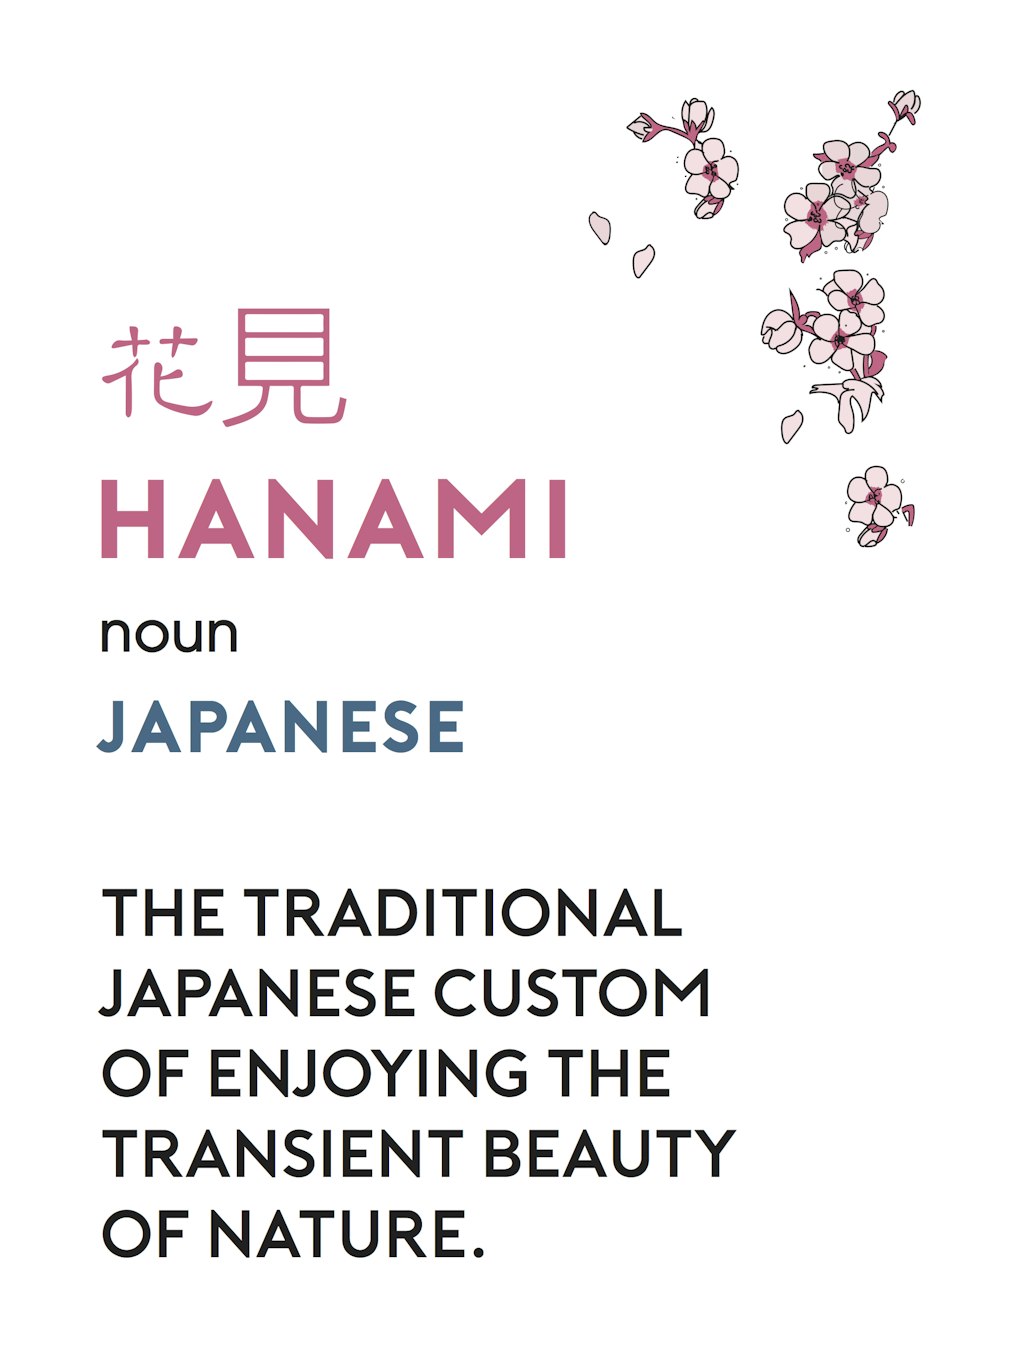 Japanese-Hanami2